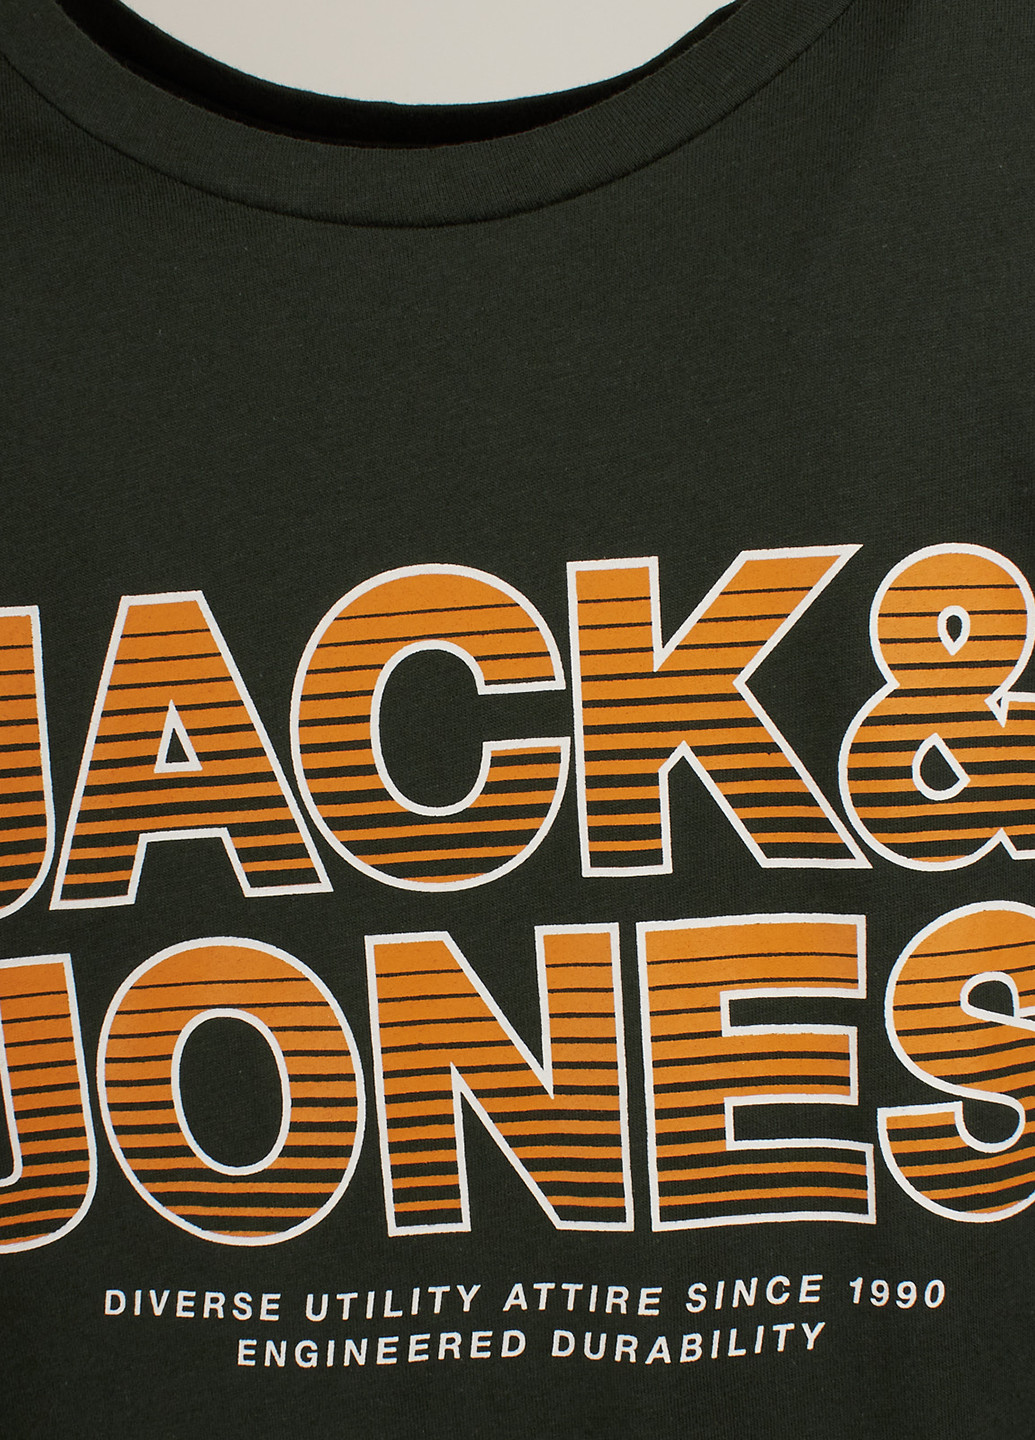 Хаки (оливковая) футболка Jack & Jones